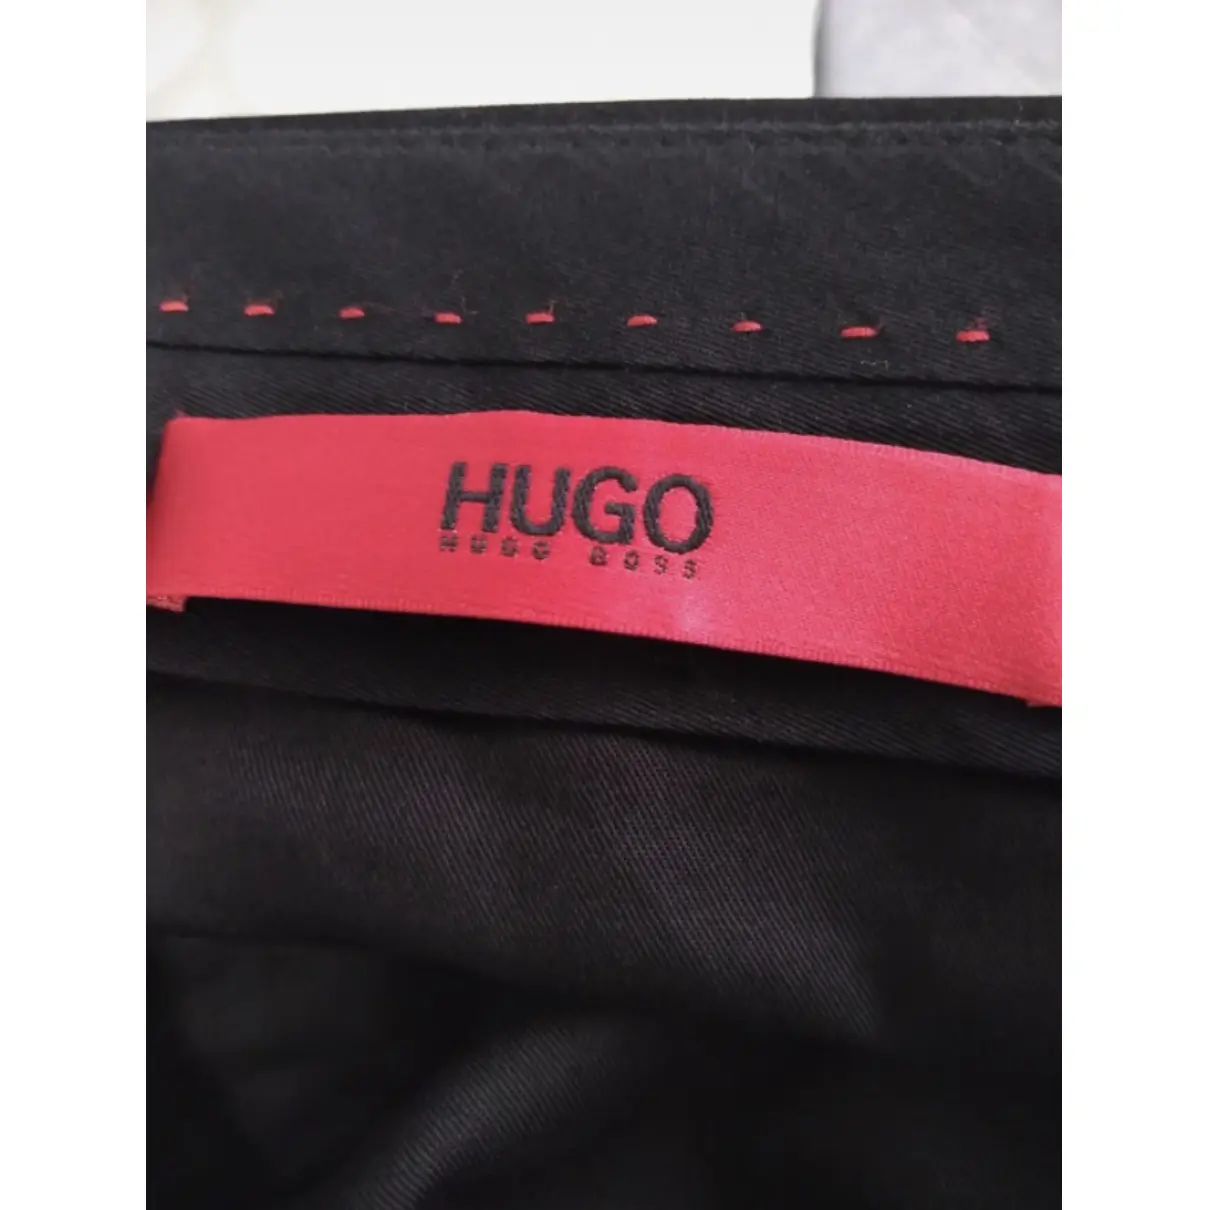 Luxury Hugo Boss Suits Men